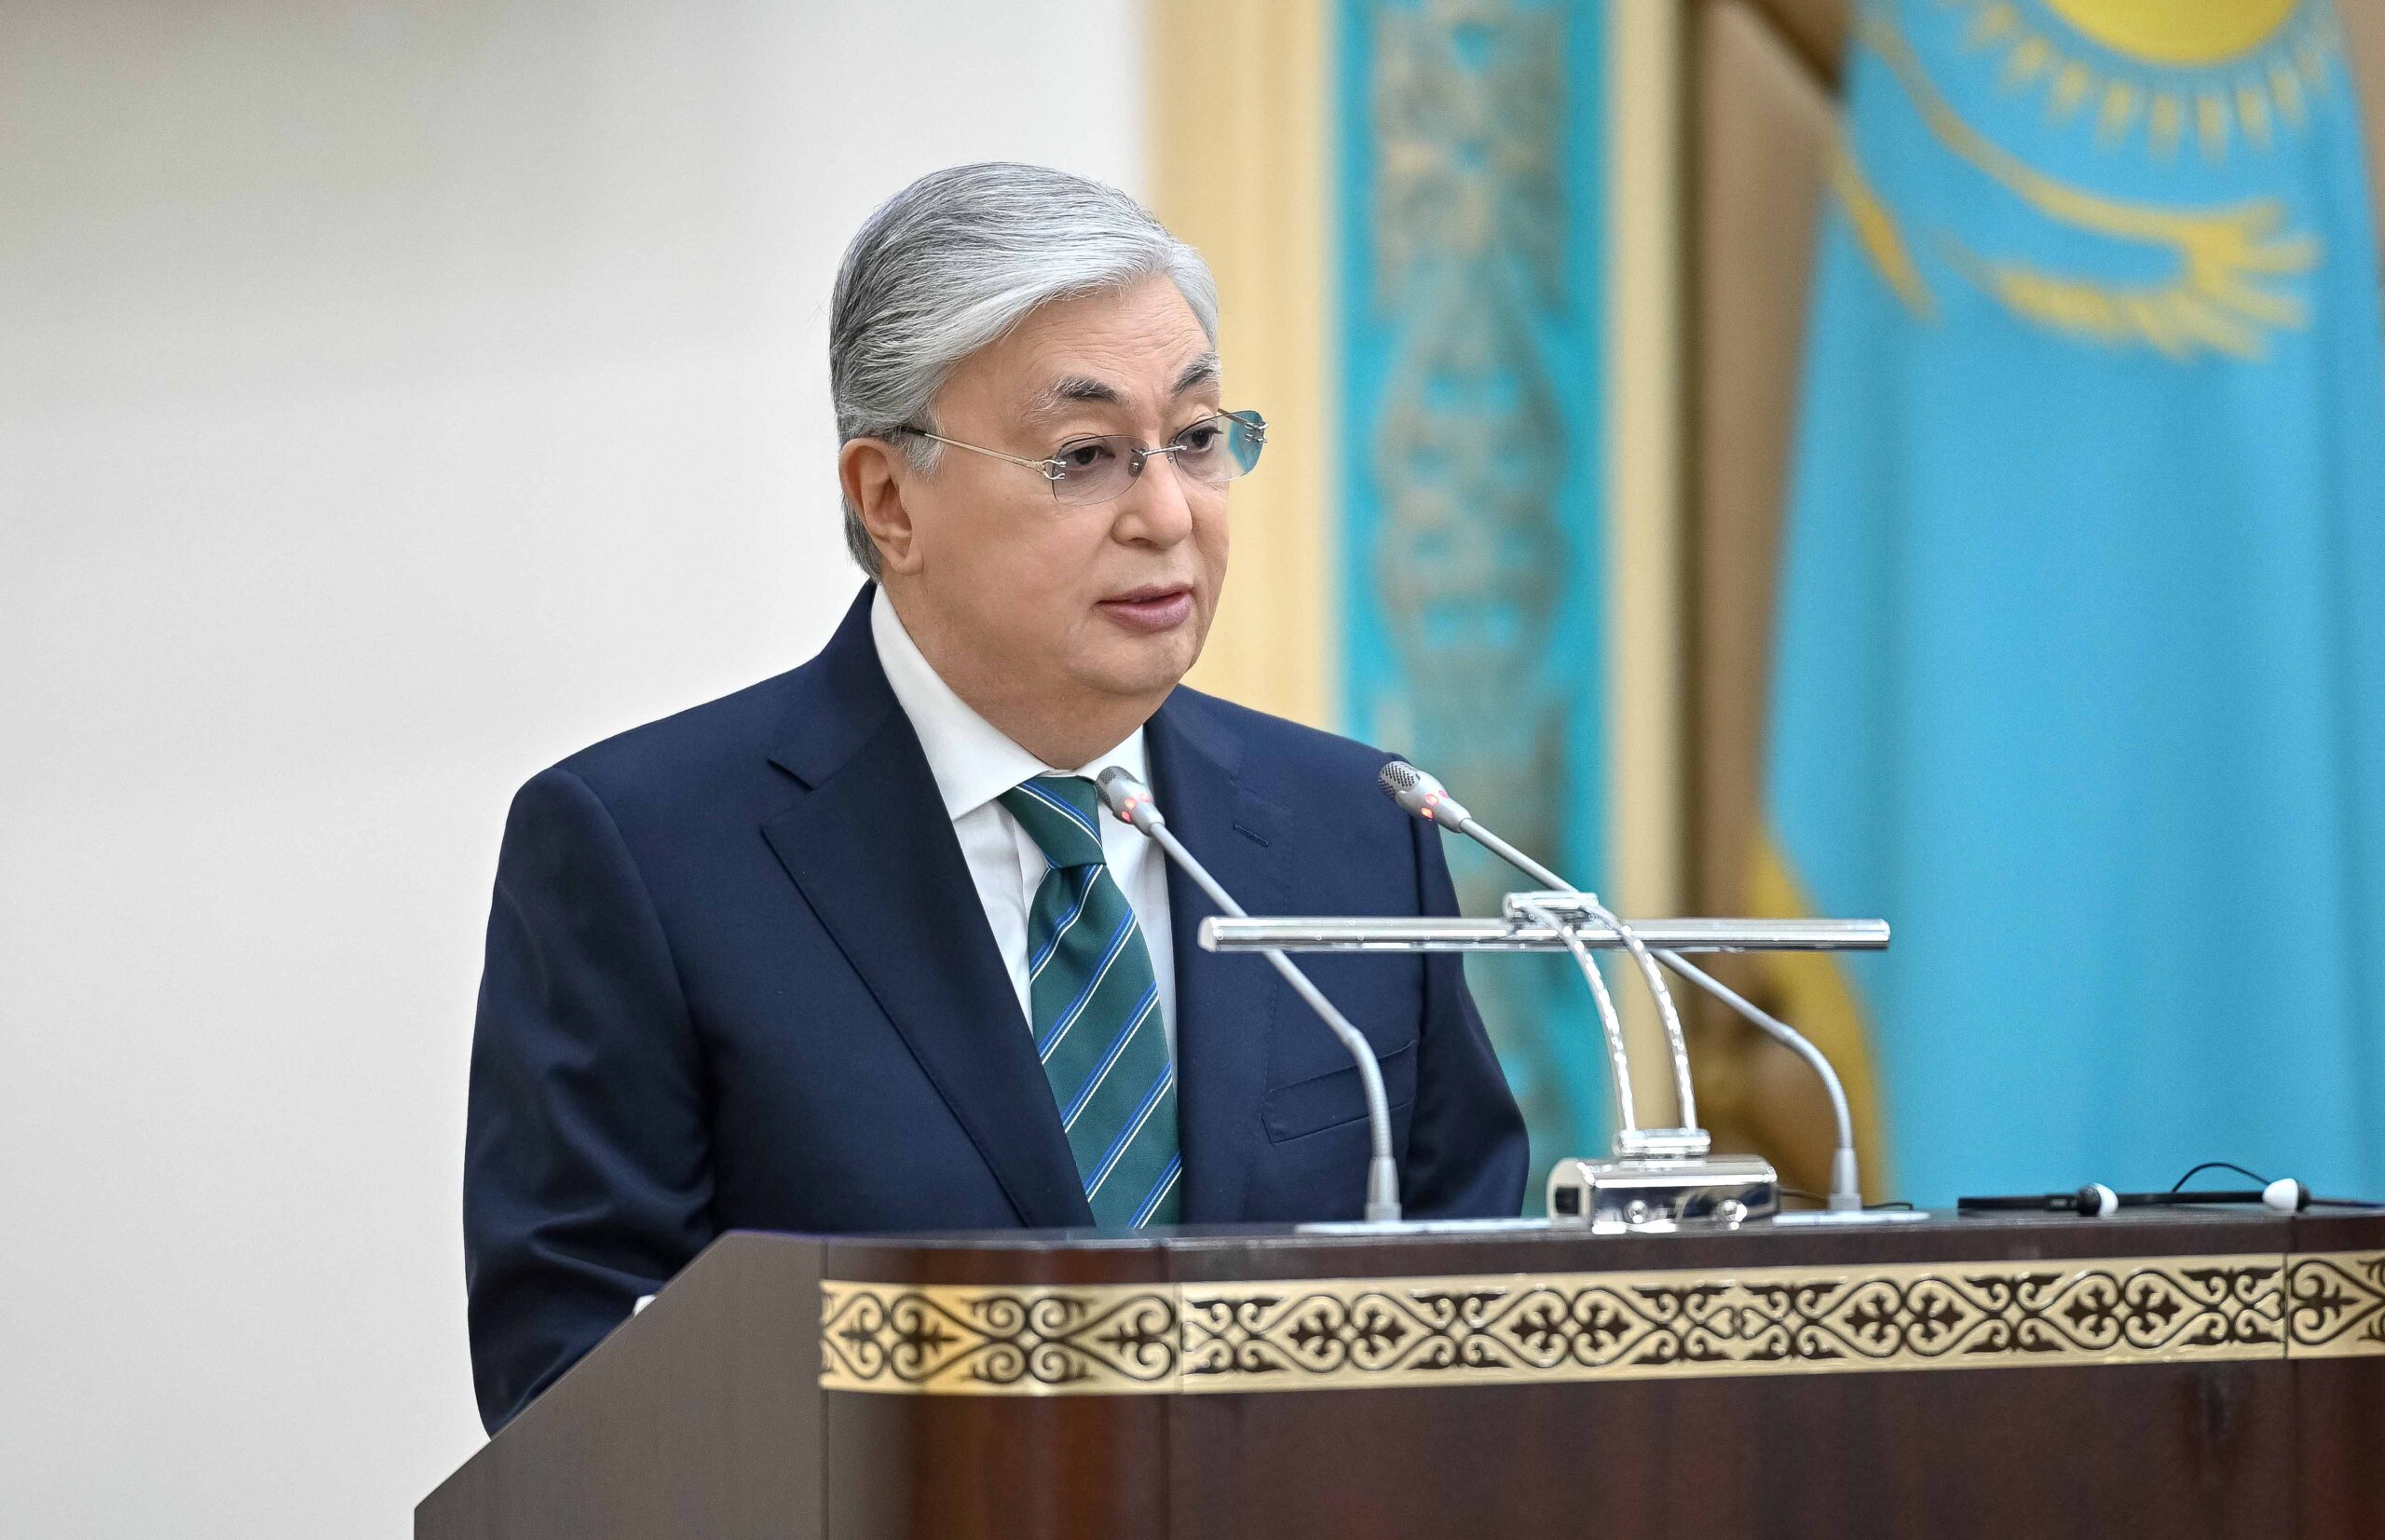 Казахстан переходит к системе президентского государства с сильным парламентом, говорит президент Токаев - Bizmedia.kz